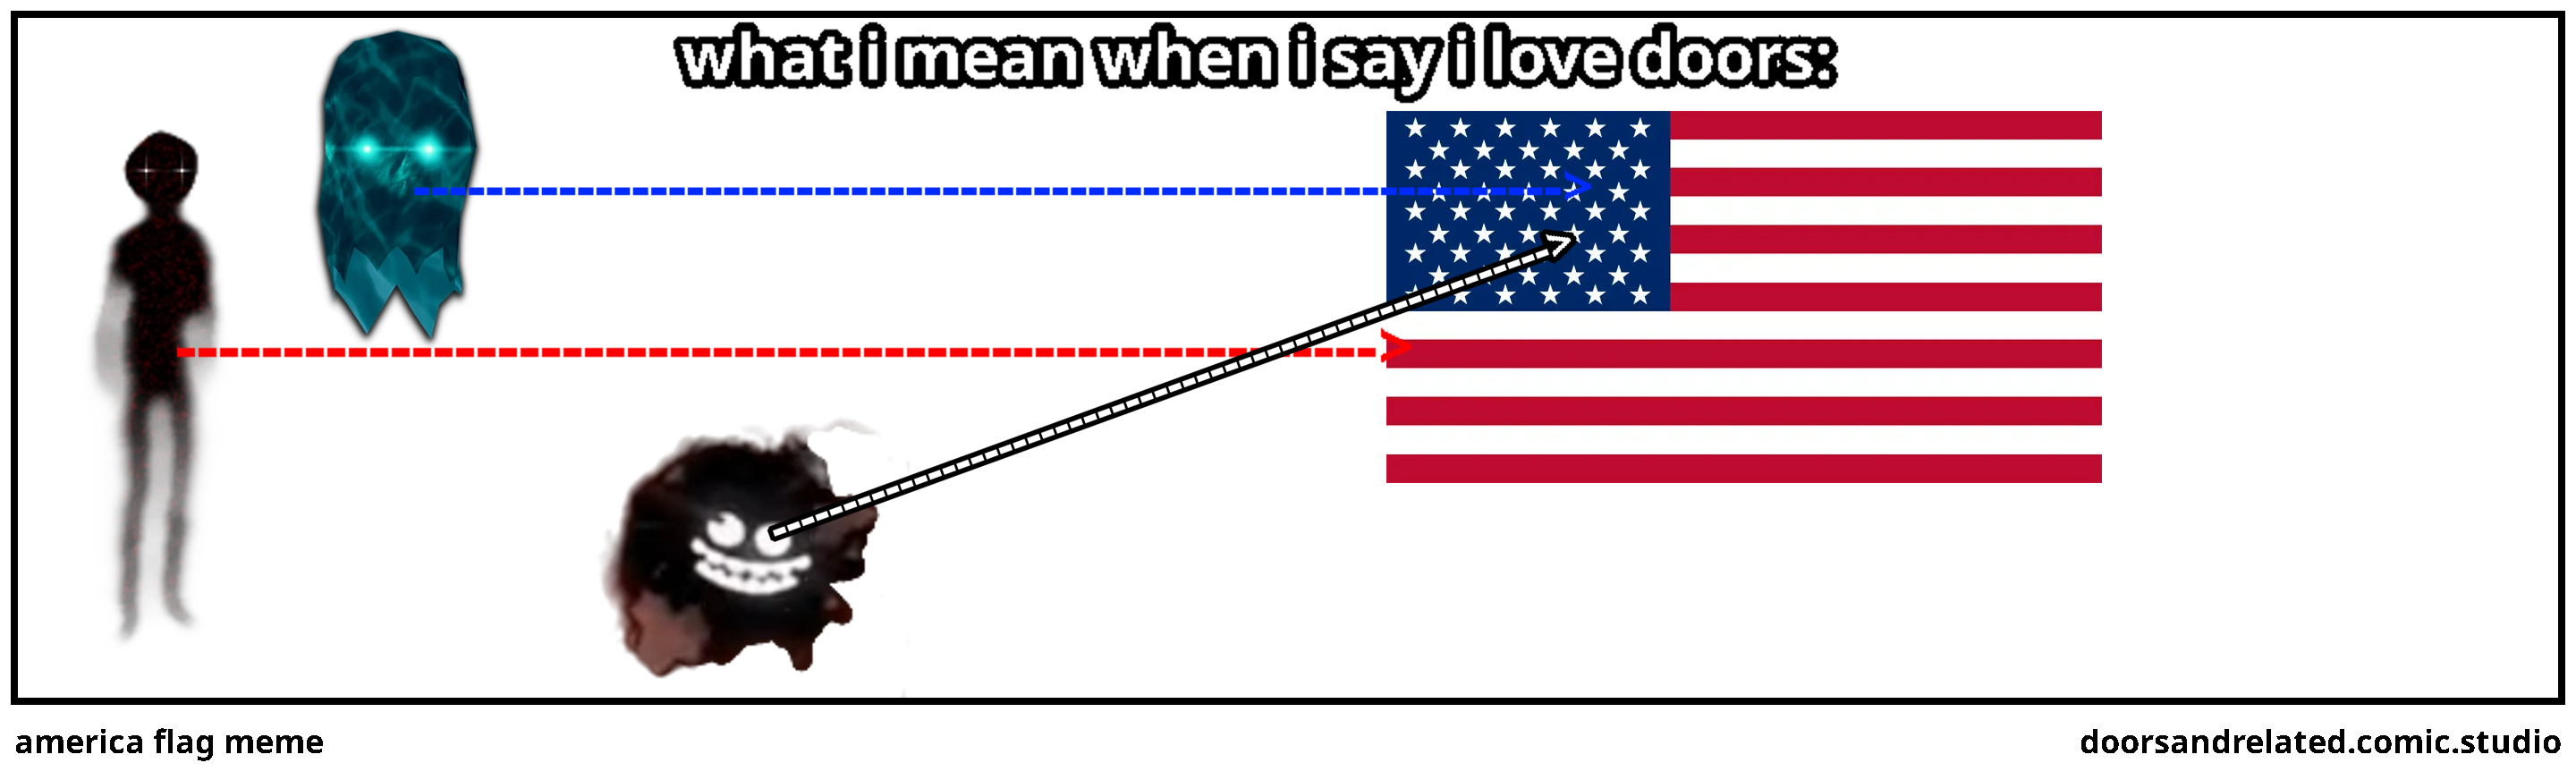 america flag meme